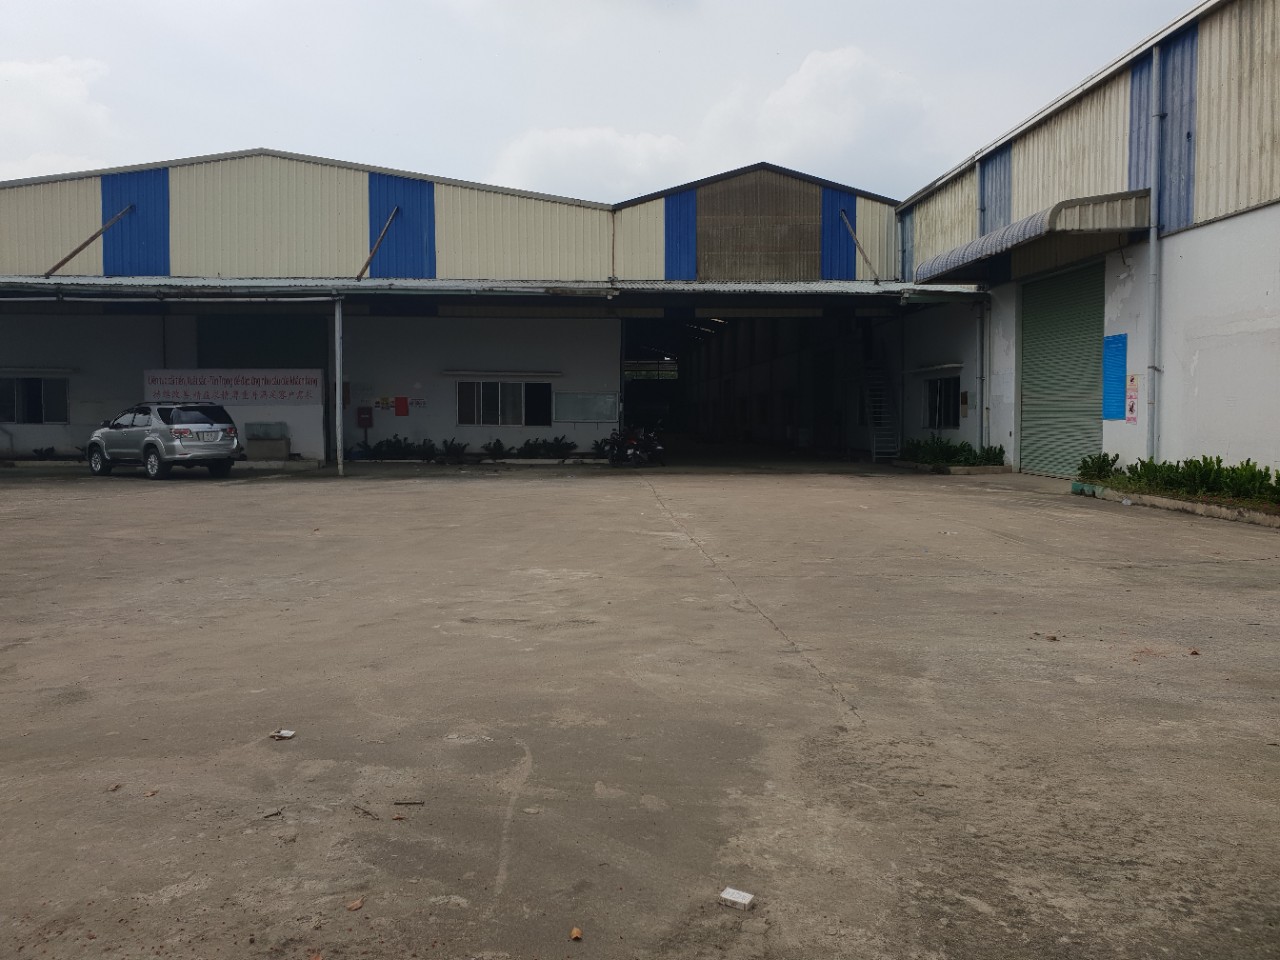 Cho thuê xưởng 6000m2 KV đất 10,000m2 mặt tiền Trần Đại Nghĩa, Quận Bình Tân, TP HCM